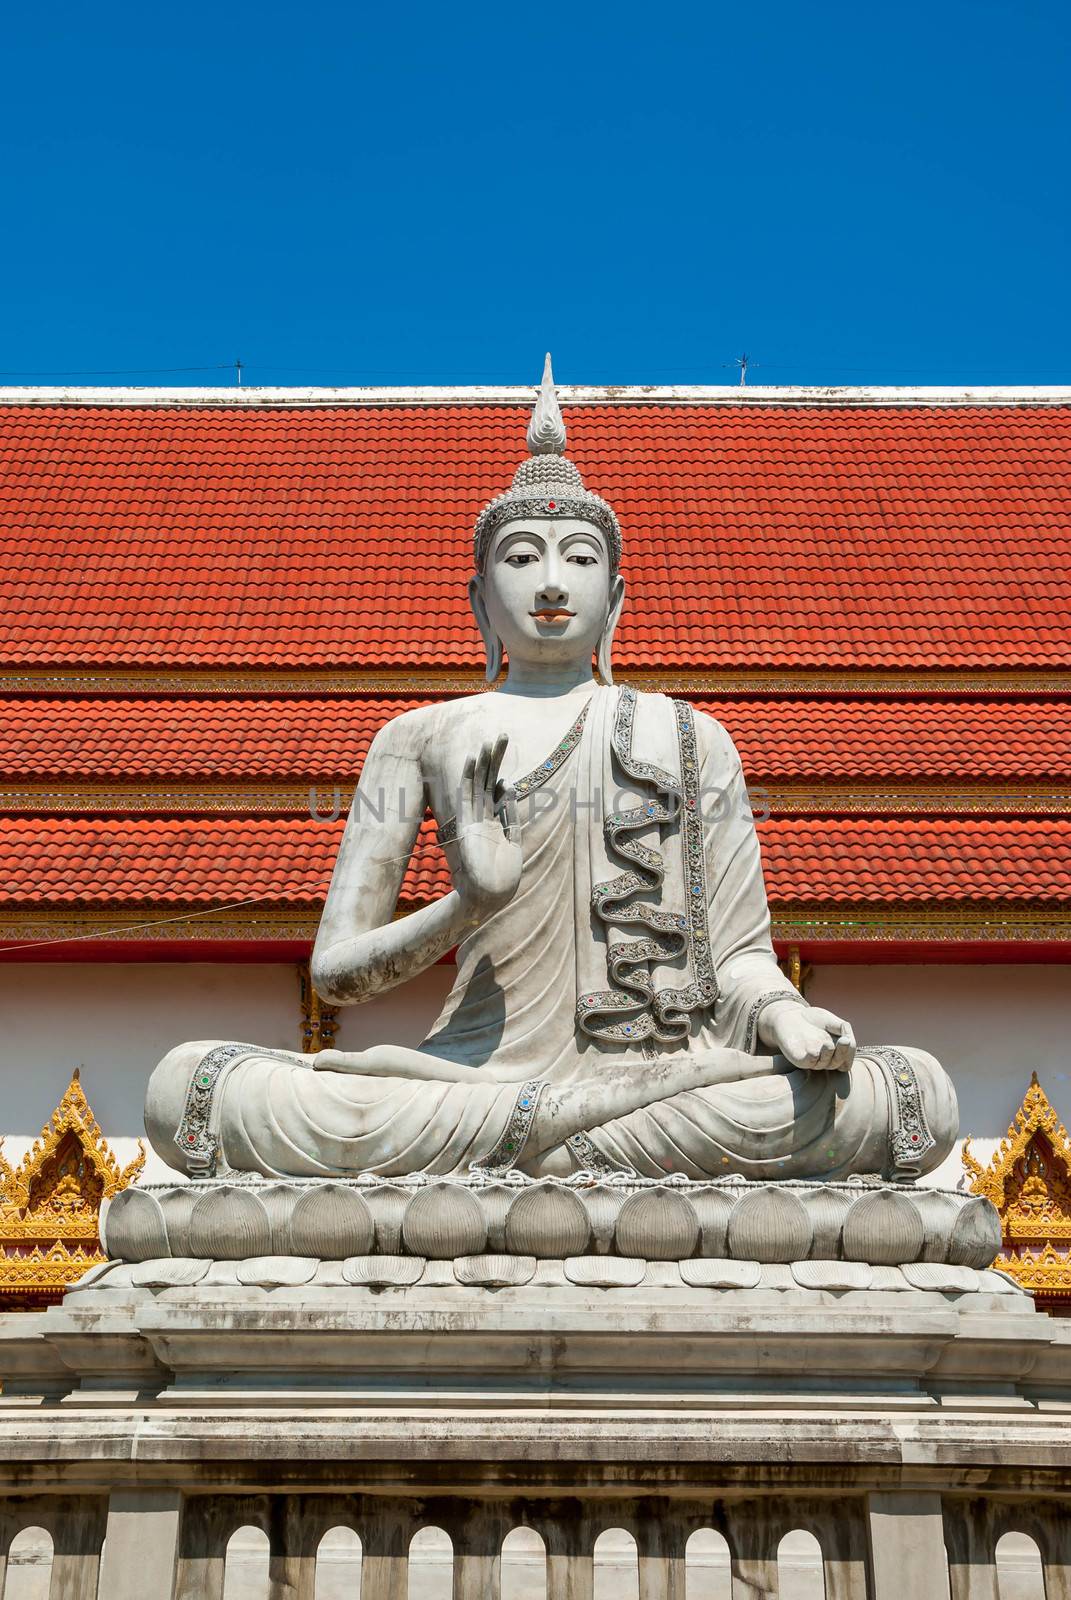 Big buddha image. by seksan44